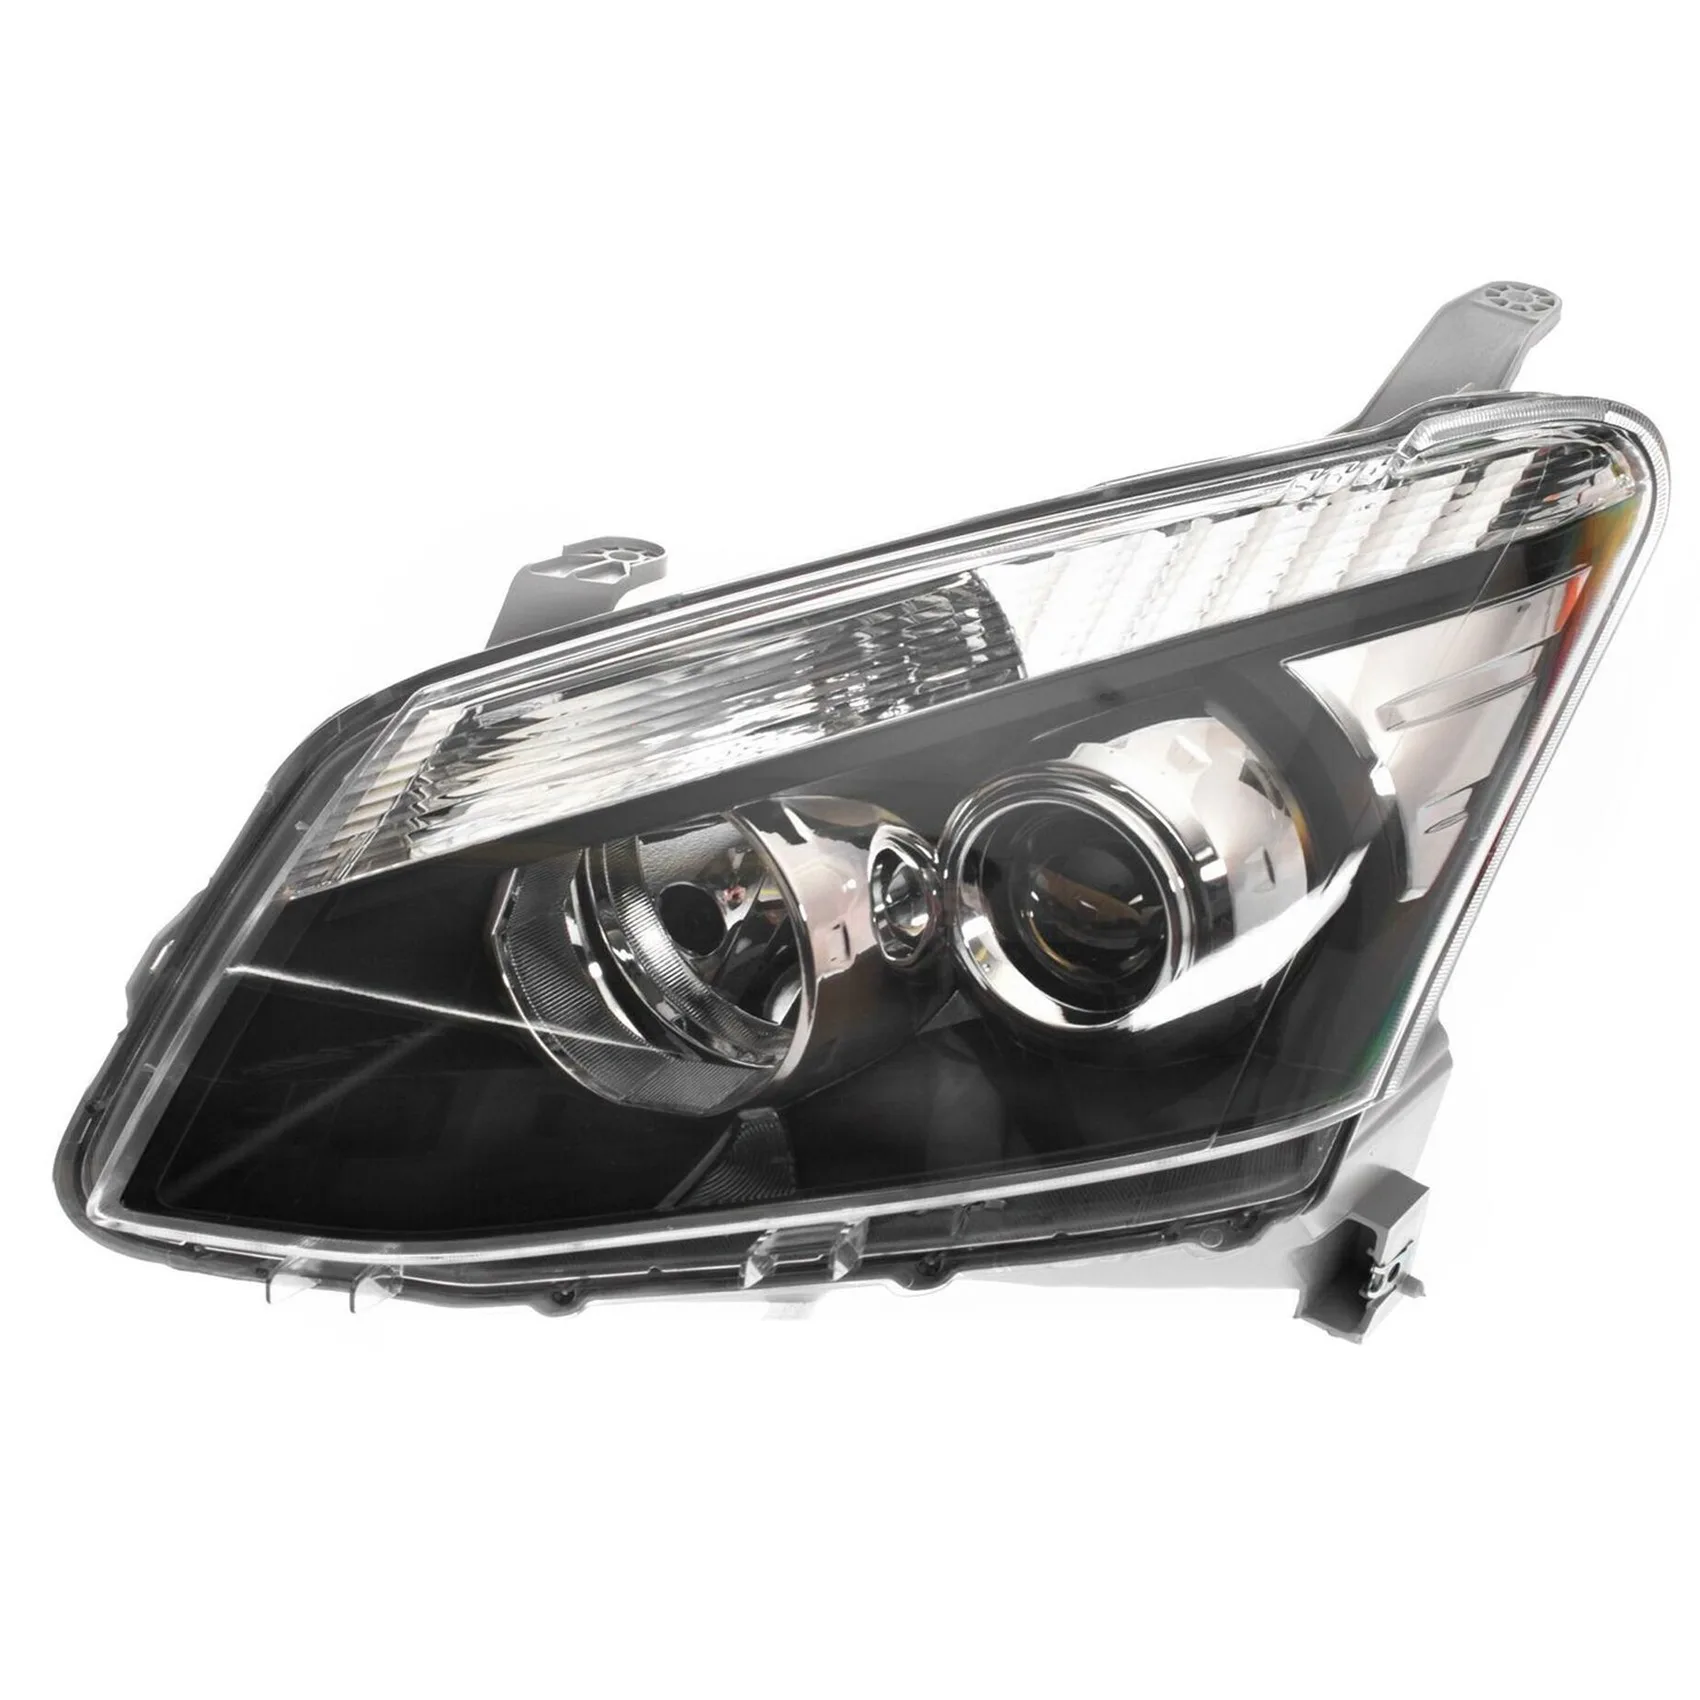 Правая сторона для D-Max Dmax 2012-2016 Крышка объектива фары автомобиля, лампа головного света, прозрачный абажур из стекла LH 2